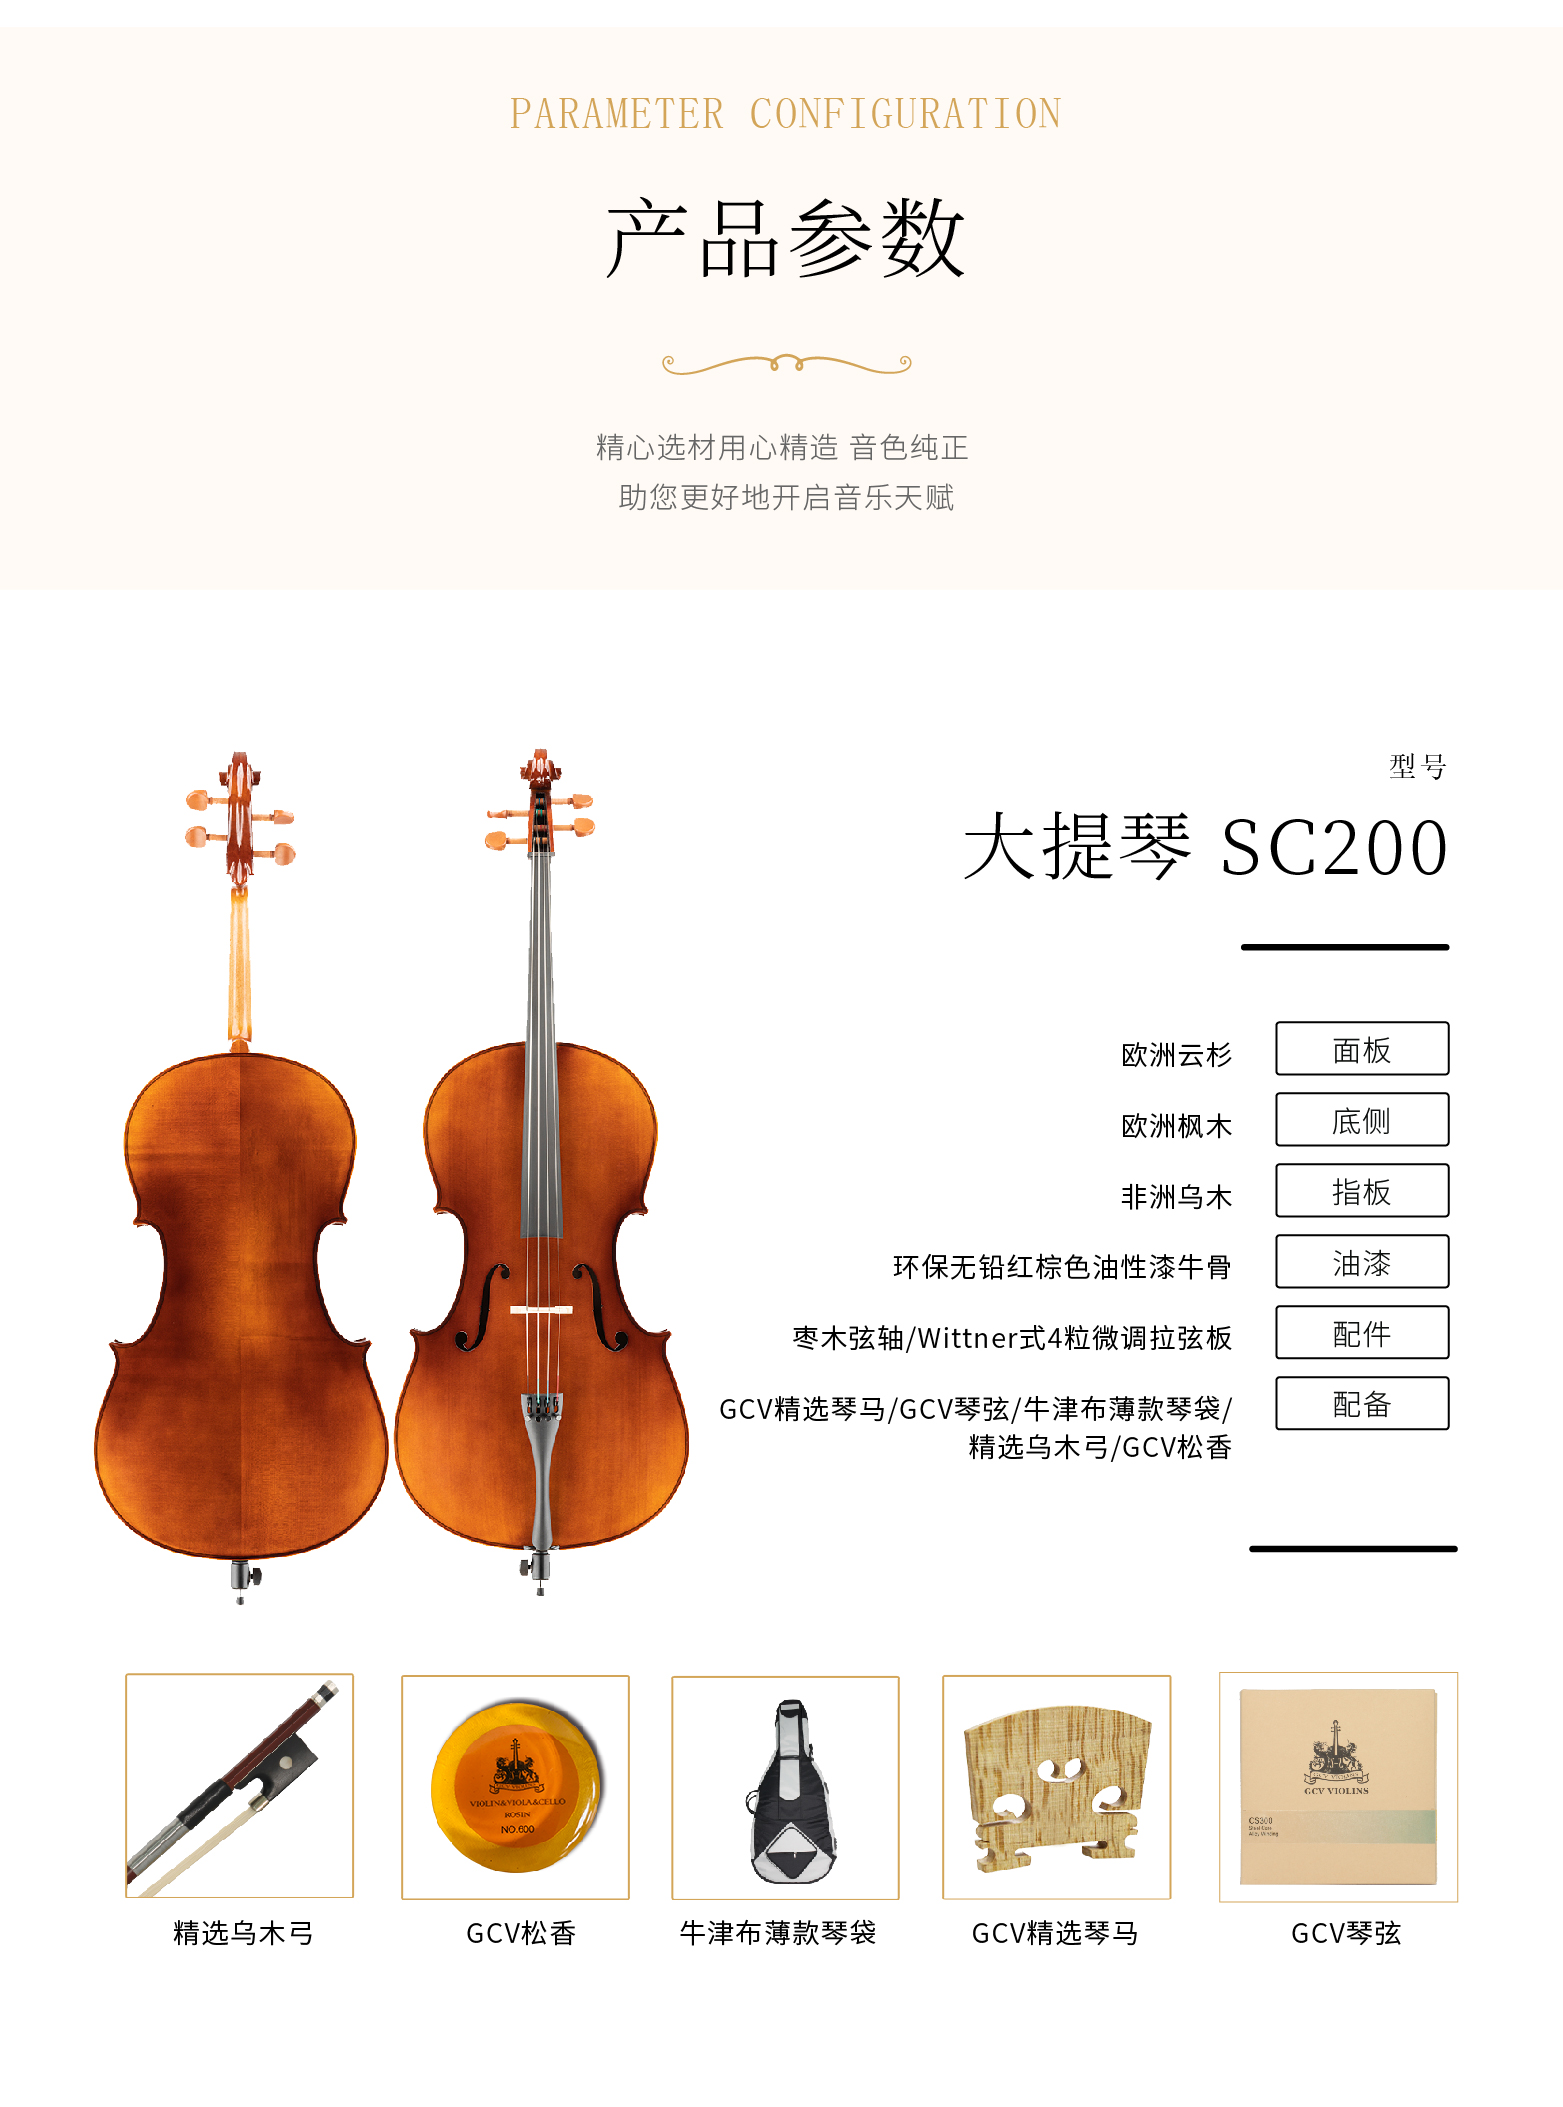 熙珑乐器专营店-详情-v1-2_SC200大提琴_复制_PC-副本-2_03.png